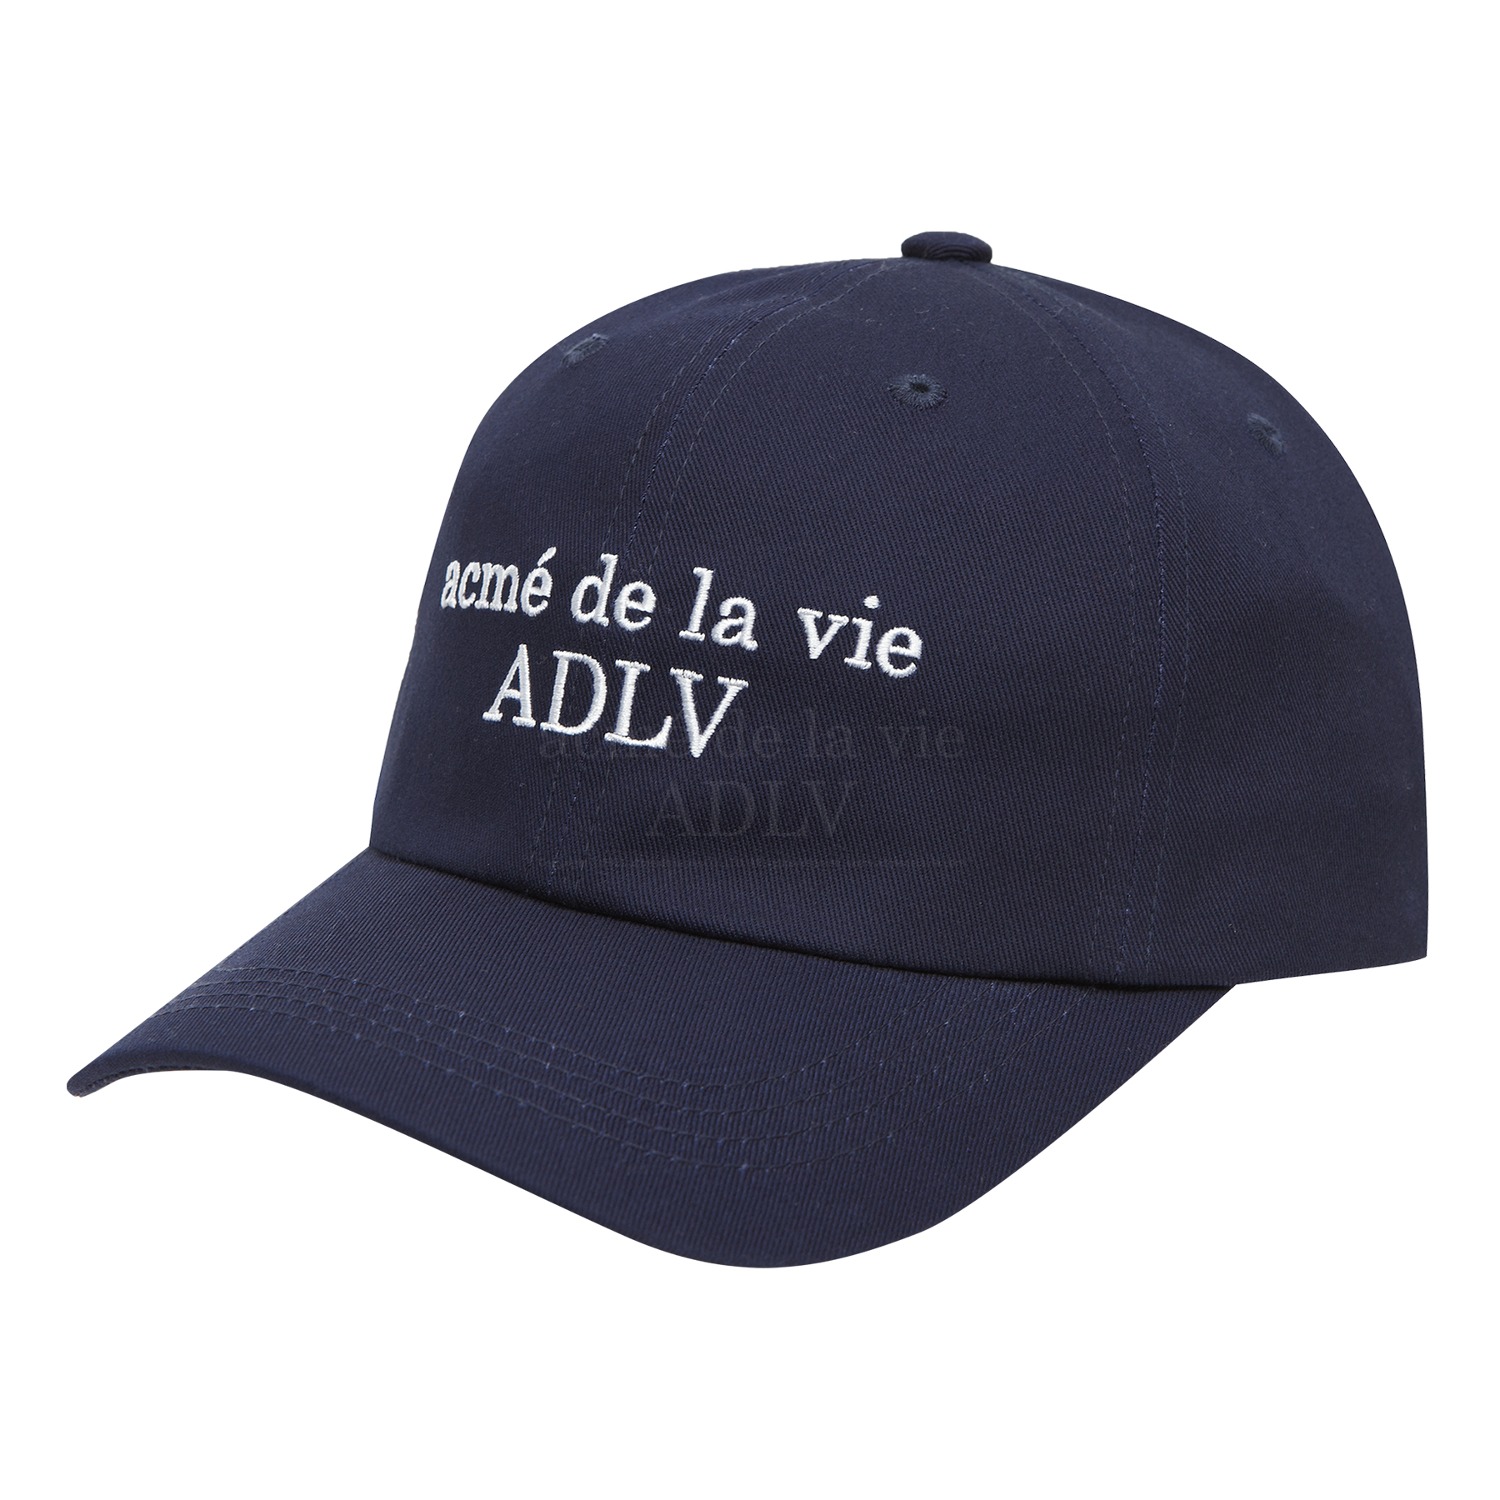 [아크메드라비] ADLV BASIC BALL CAP NAVY,아크메드라비 acmedelavie,아크메드라비